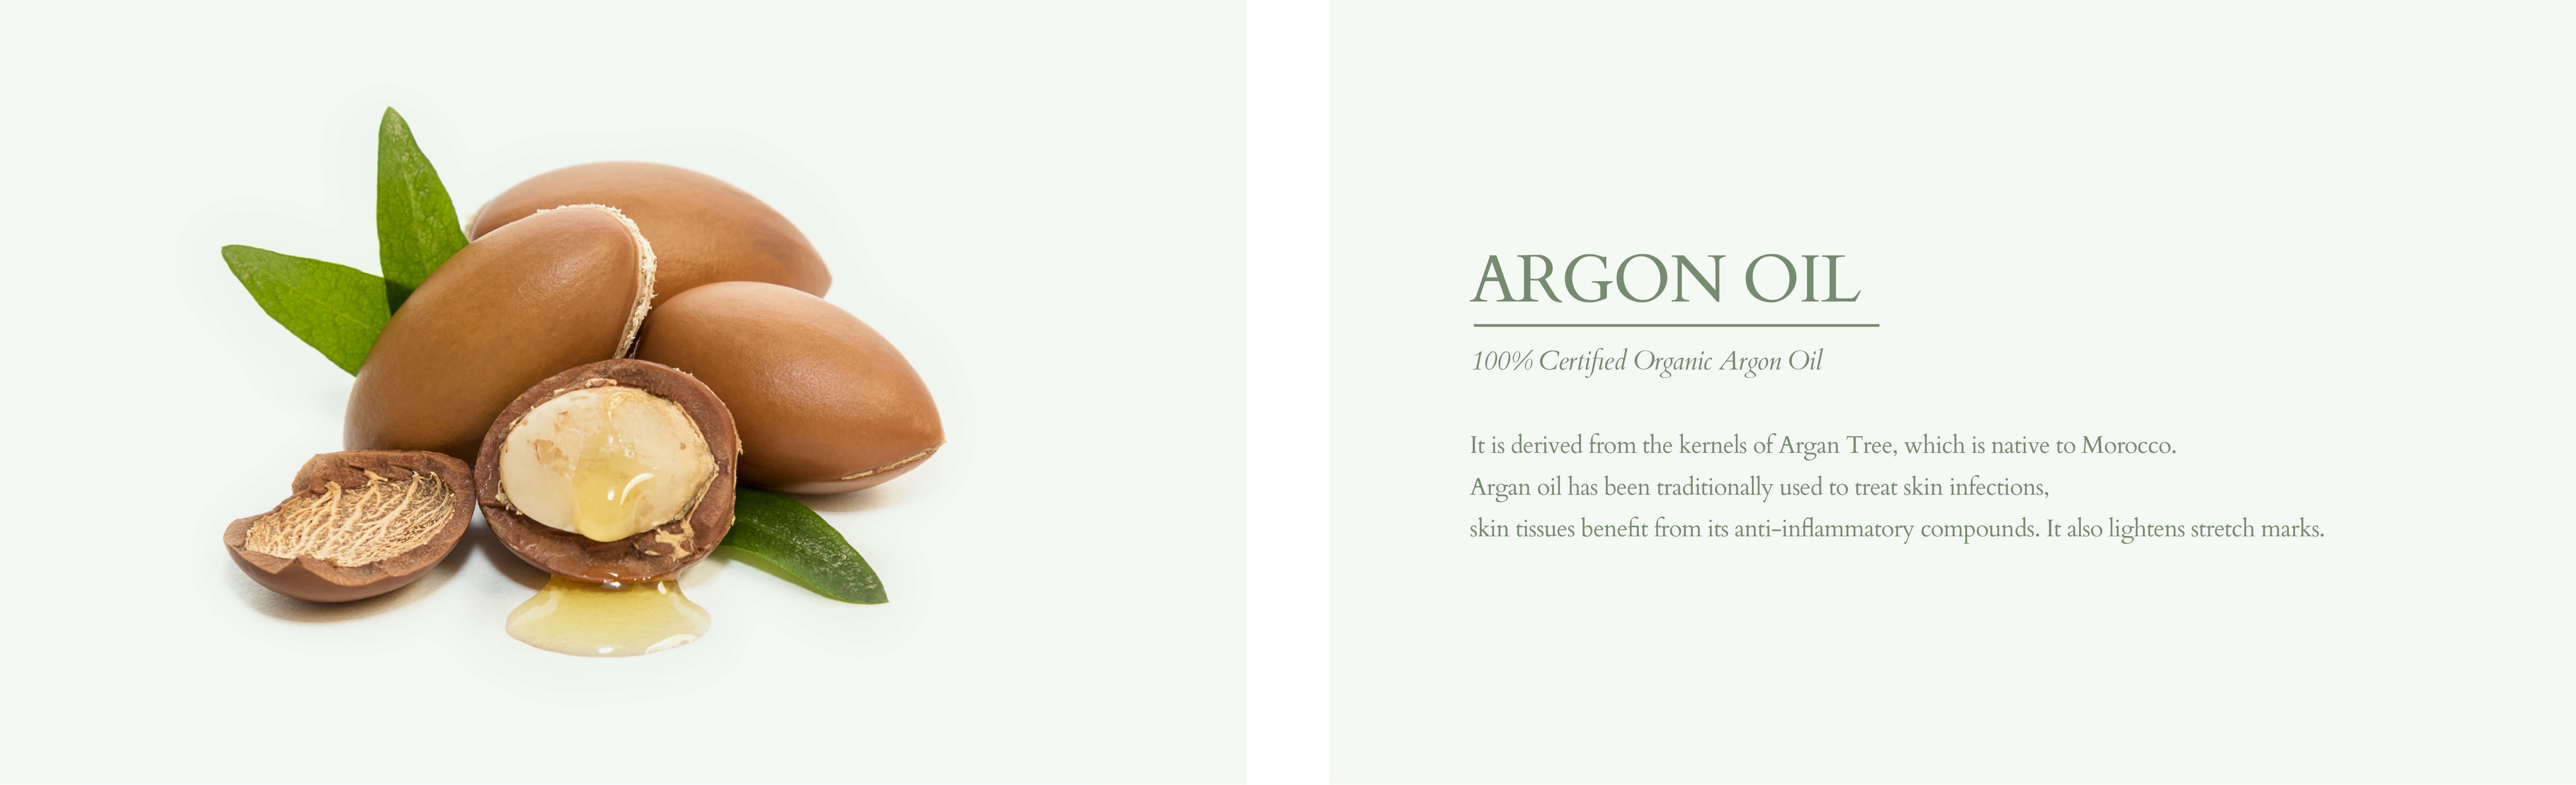 Organic argon oil for skin a8add333 0563 49f1 8507 ec389c45abc8